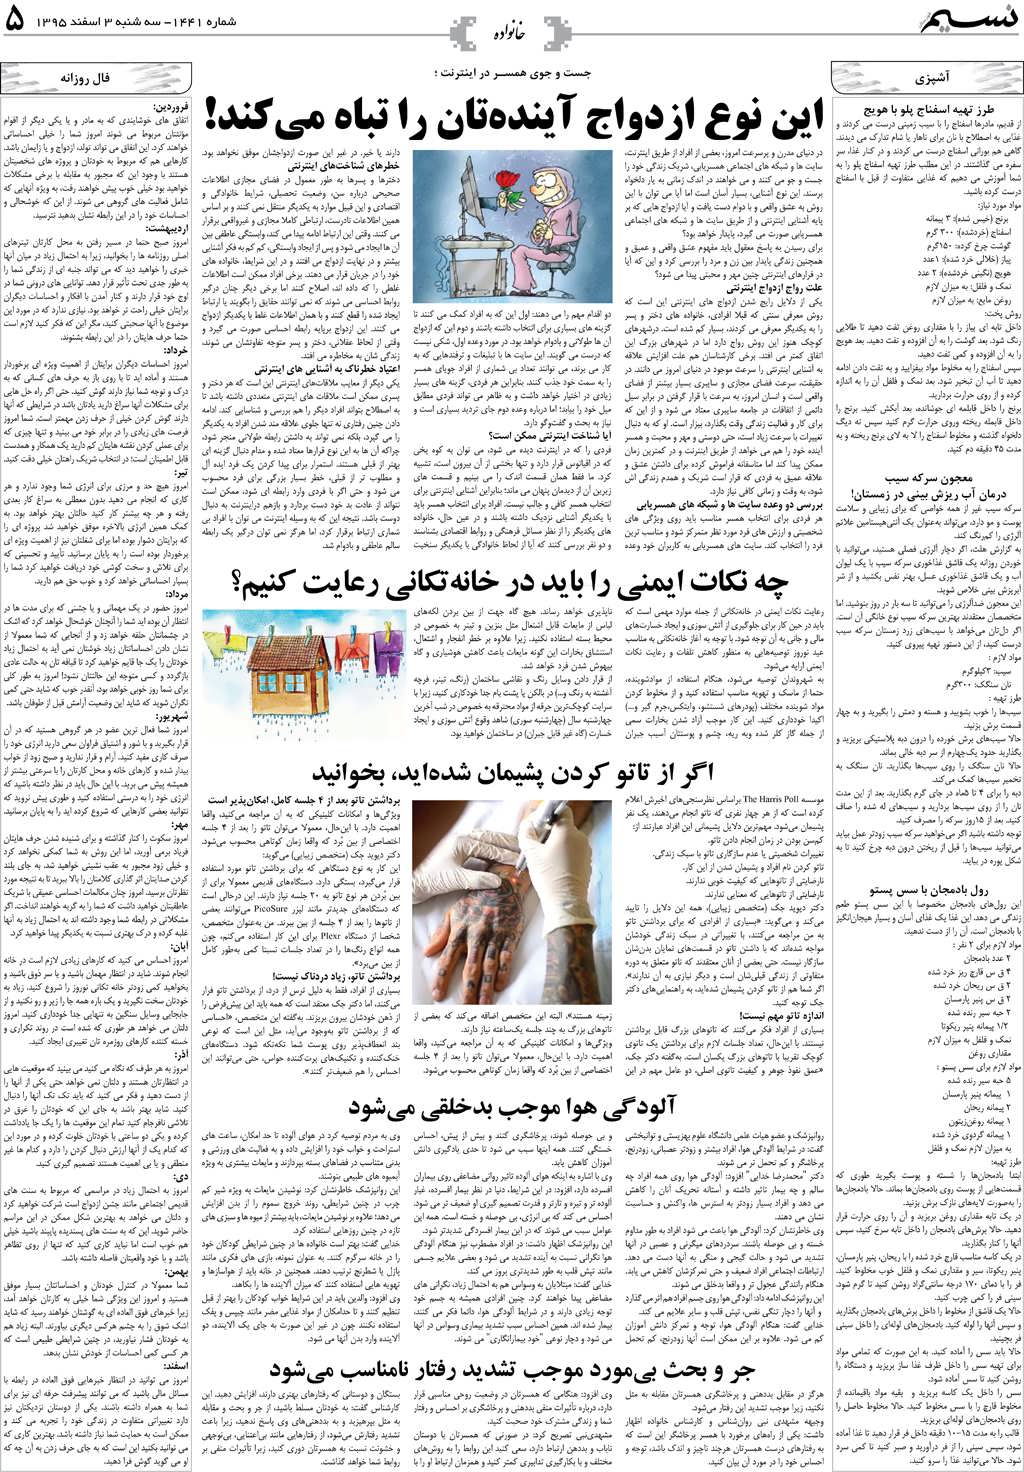 صفحه خانواده روزنامه نسیم شماره 1441